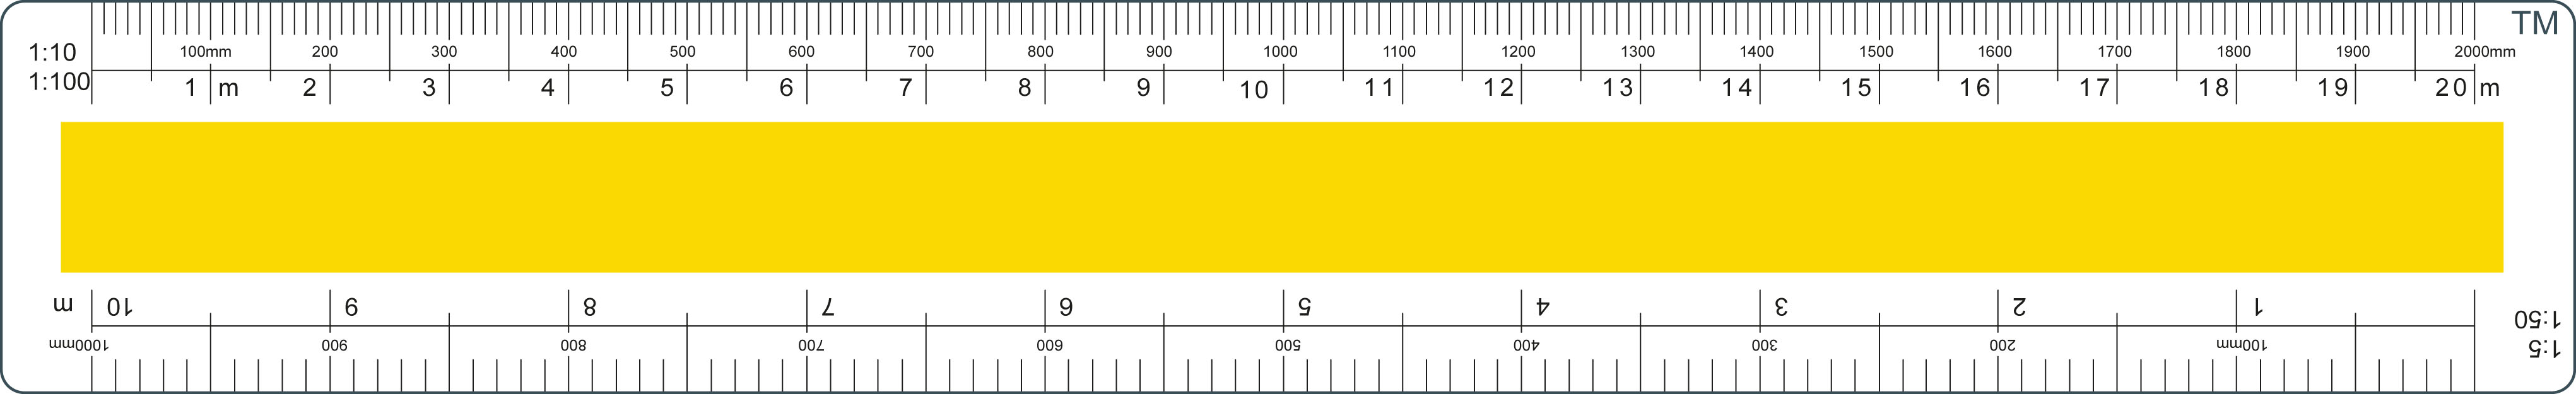 Estimators_Scale_Rule_20cm